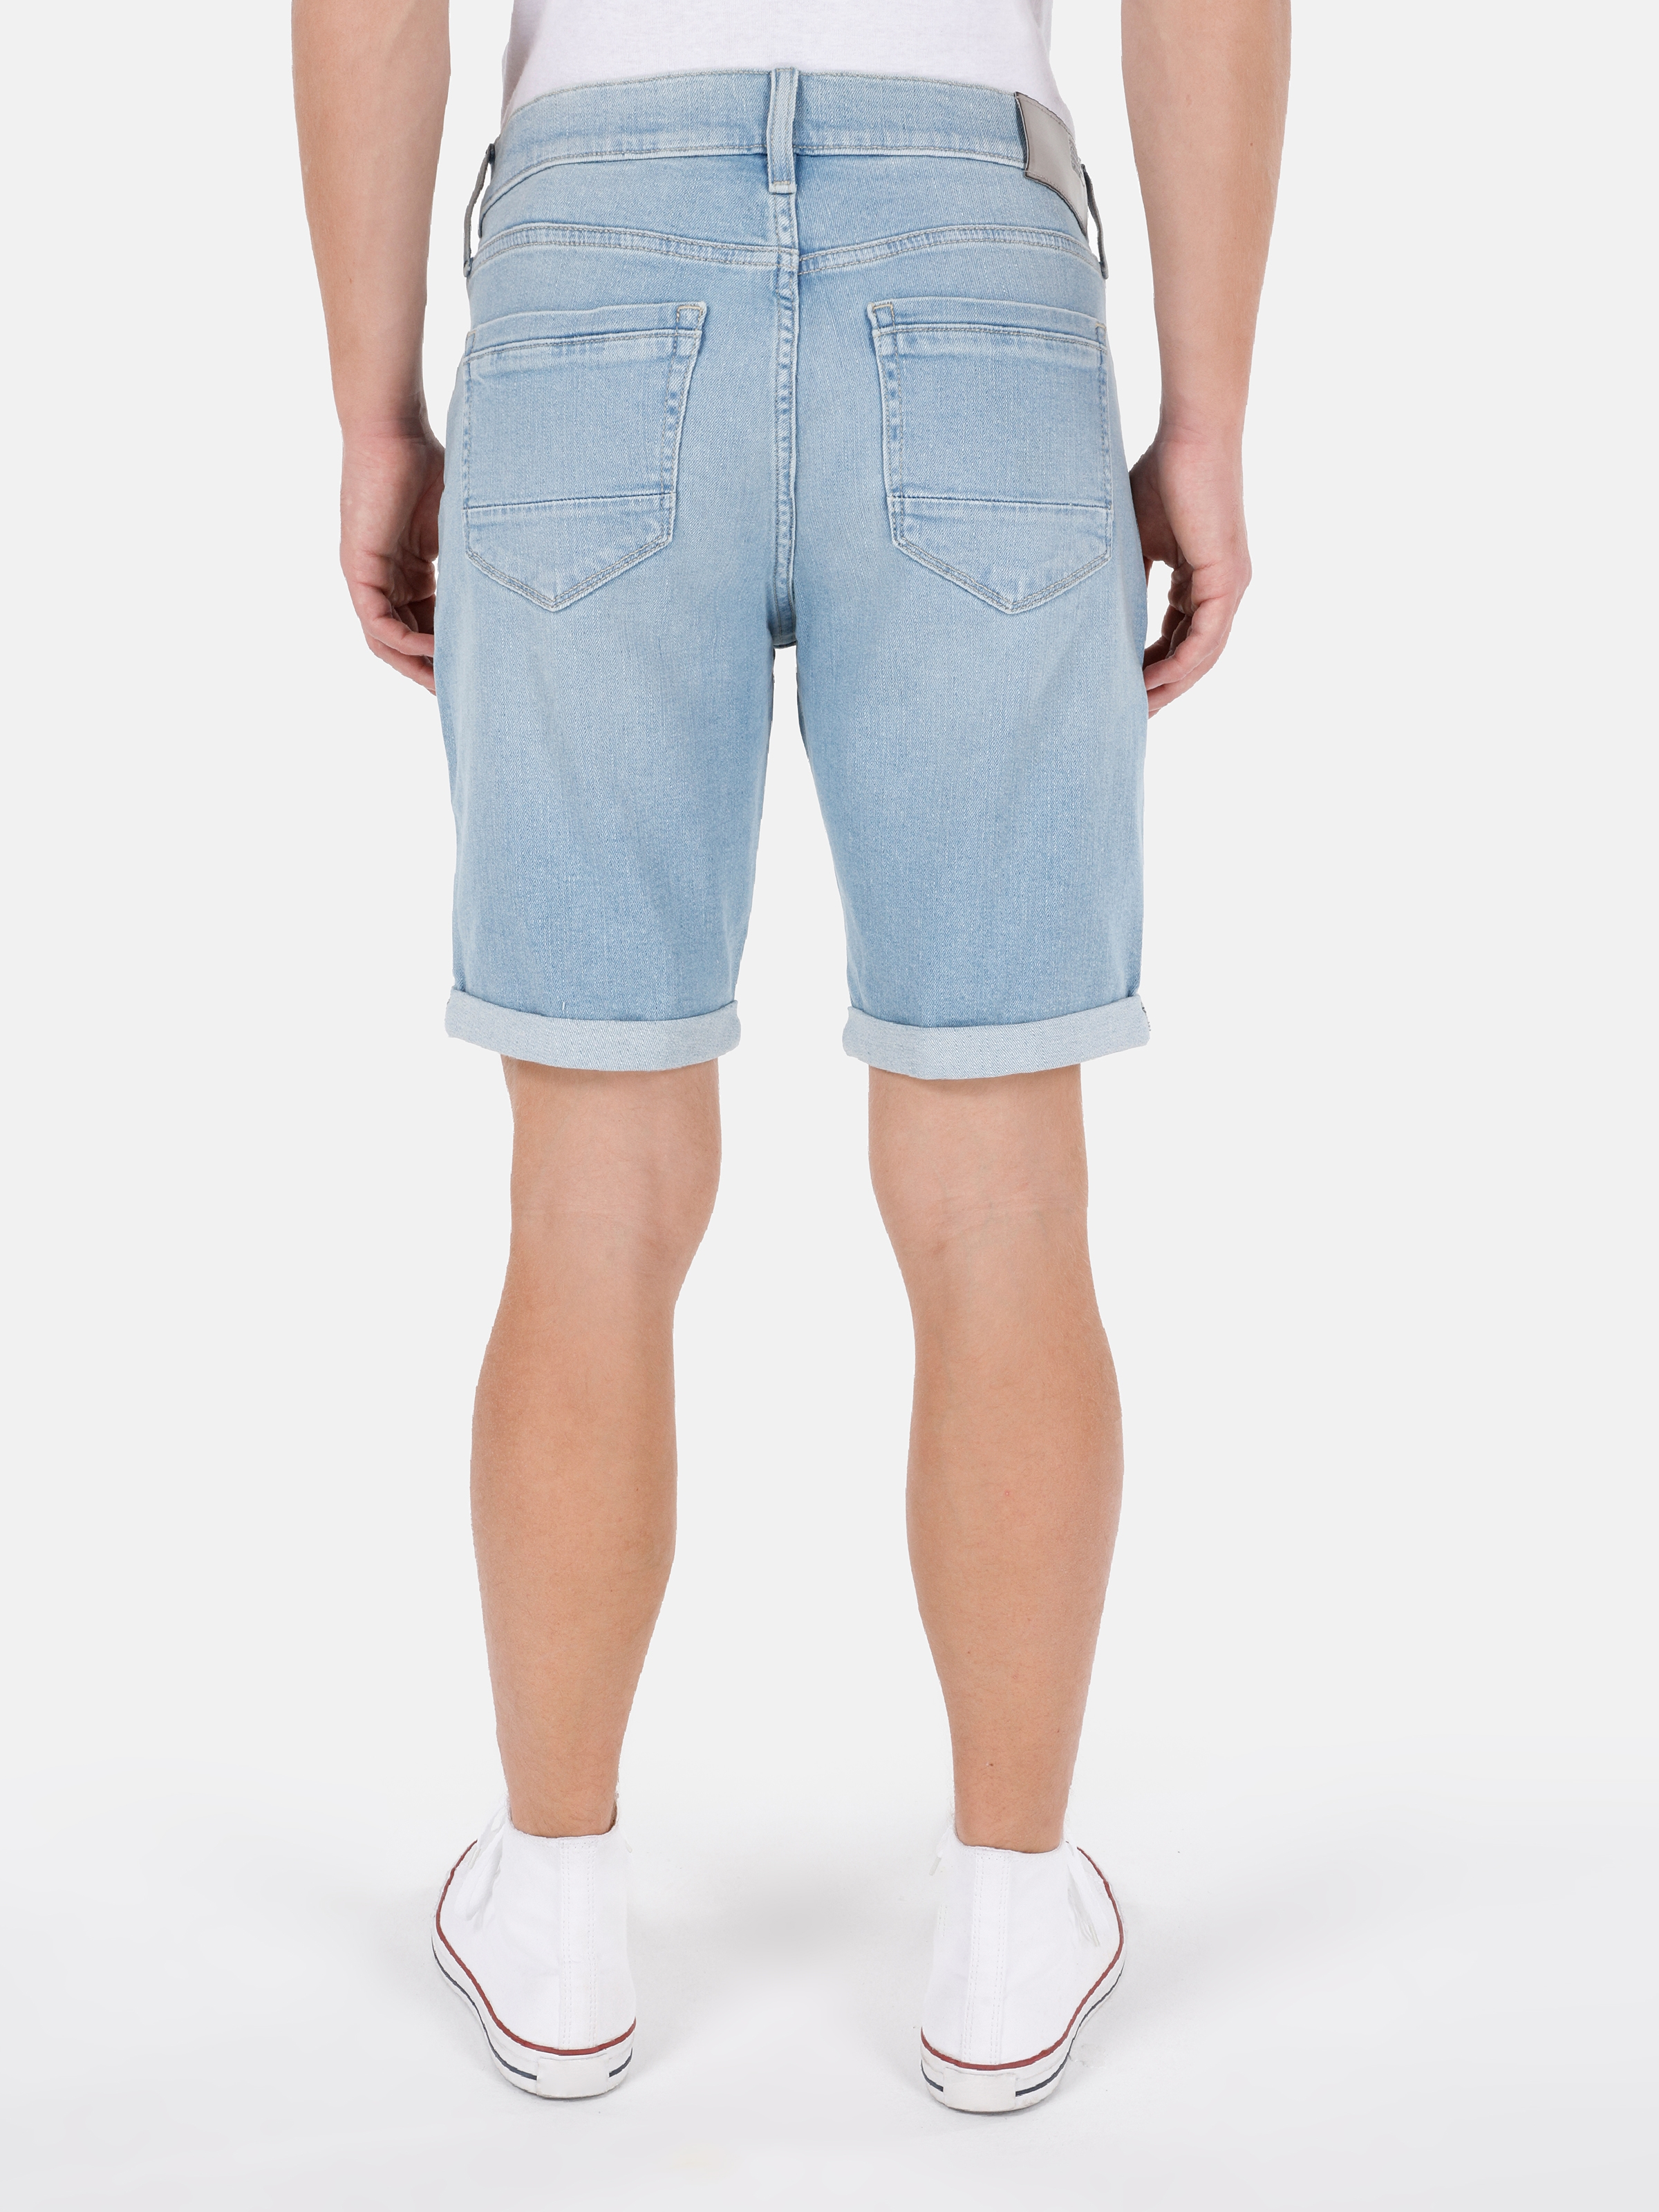 Afișați detalii pentru Short / Pantaloni Scurti De Barbati Albastru Slim Fit 041 DANNY 